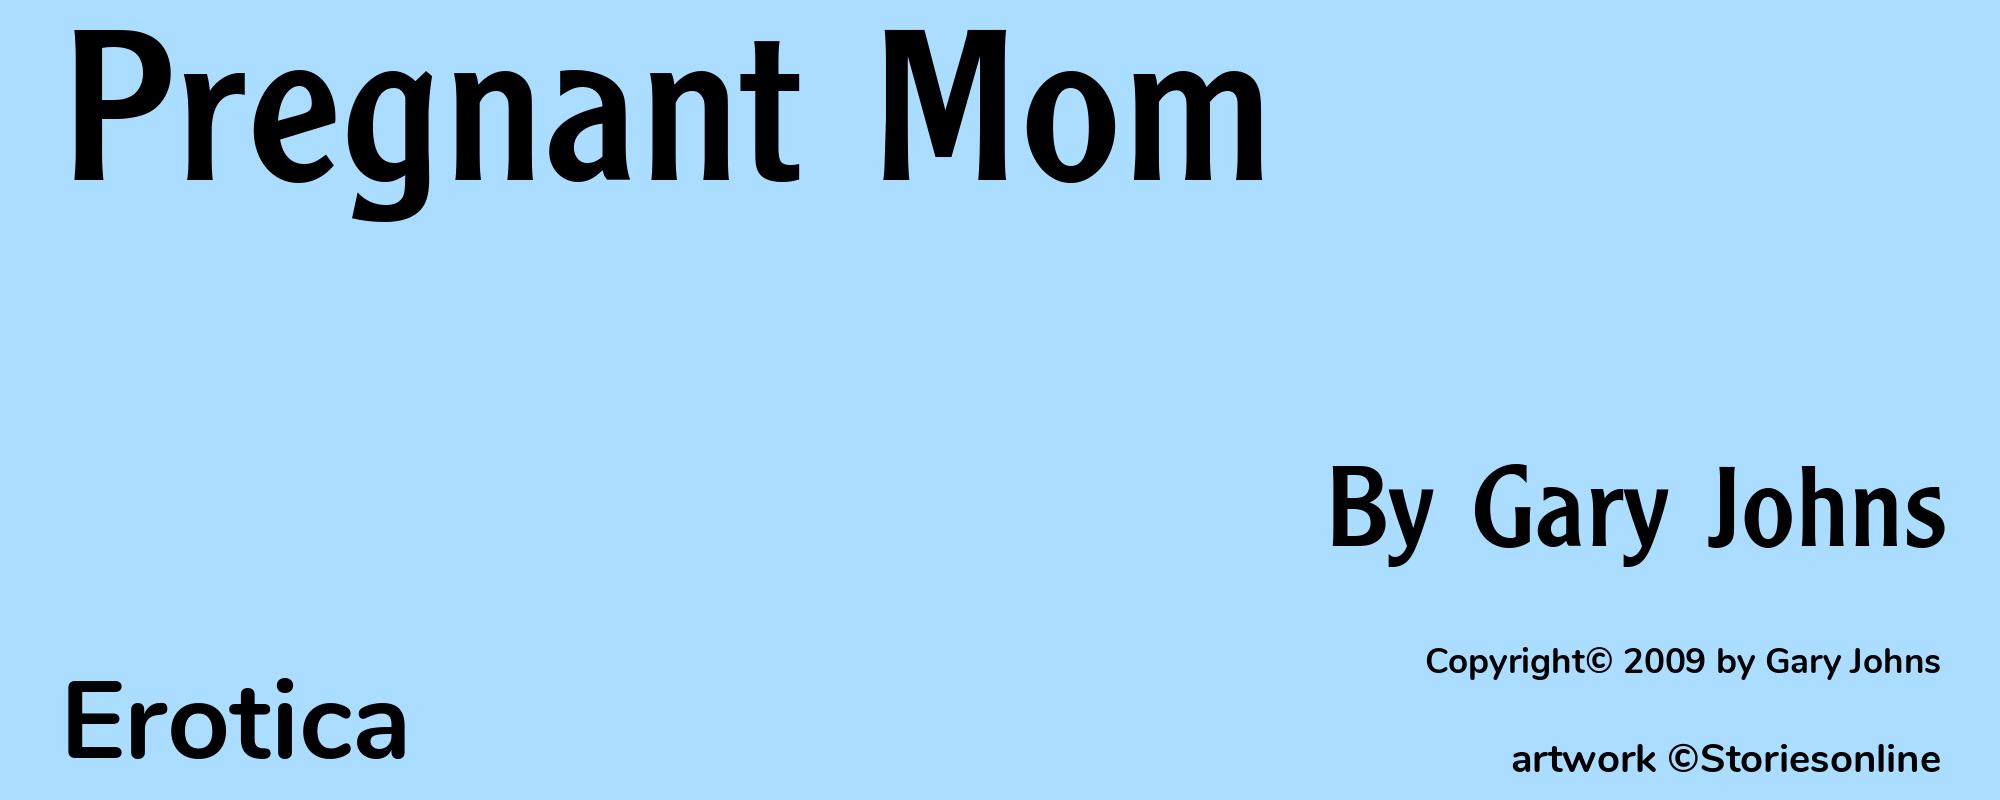 Pregnant Mom - Cover